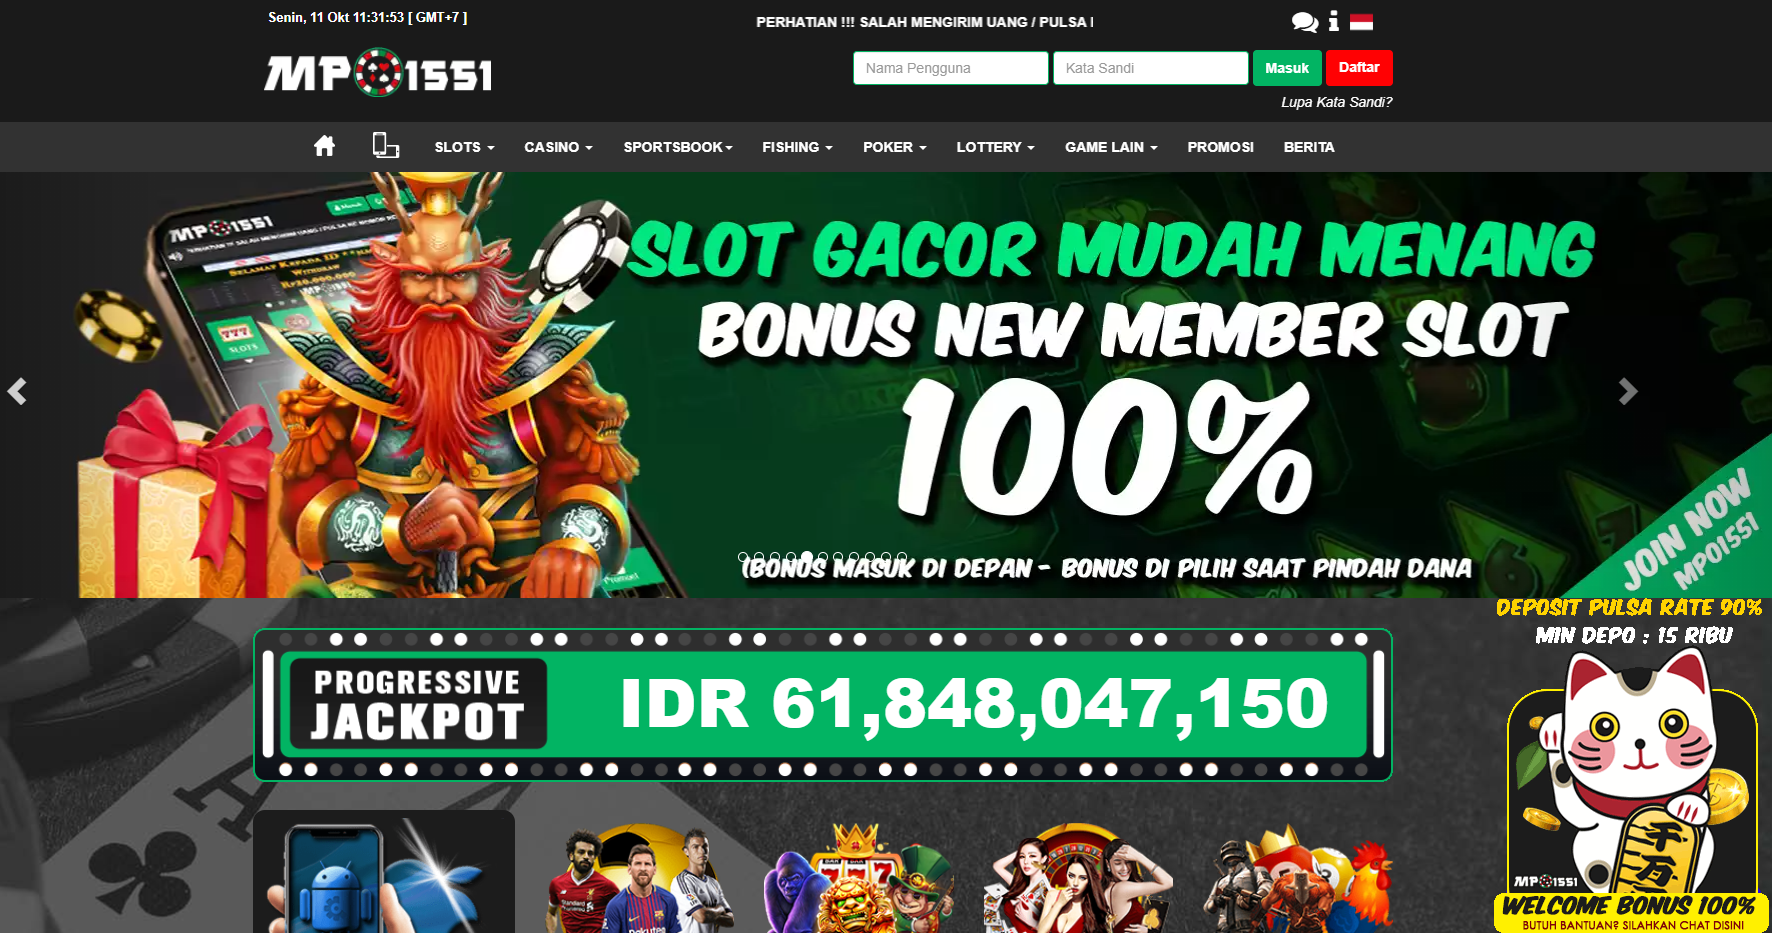 MPO1551 Situs Judi Slot Online Deposit Dana Terpercaya